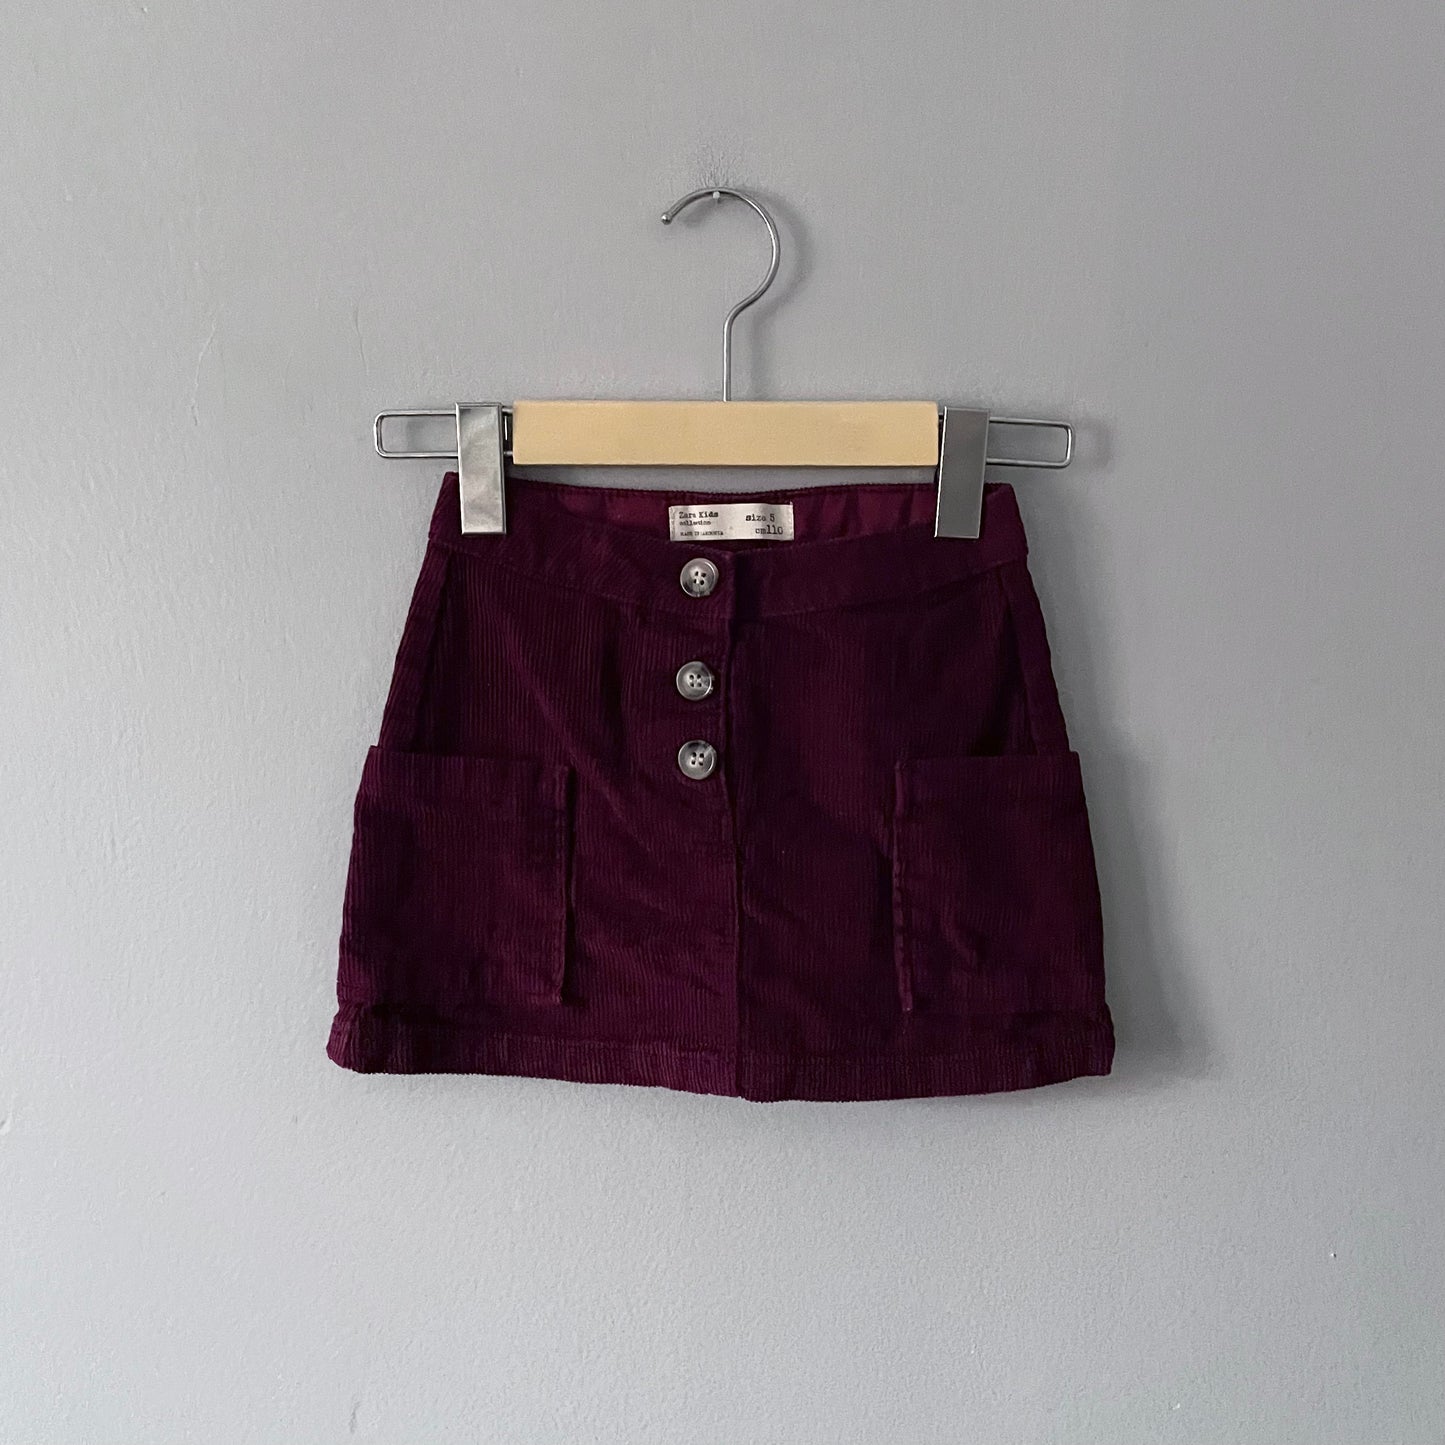 Zara / Burgundy corduroy skirt / 5Y